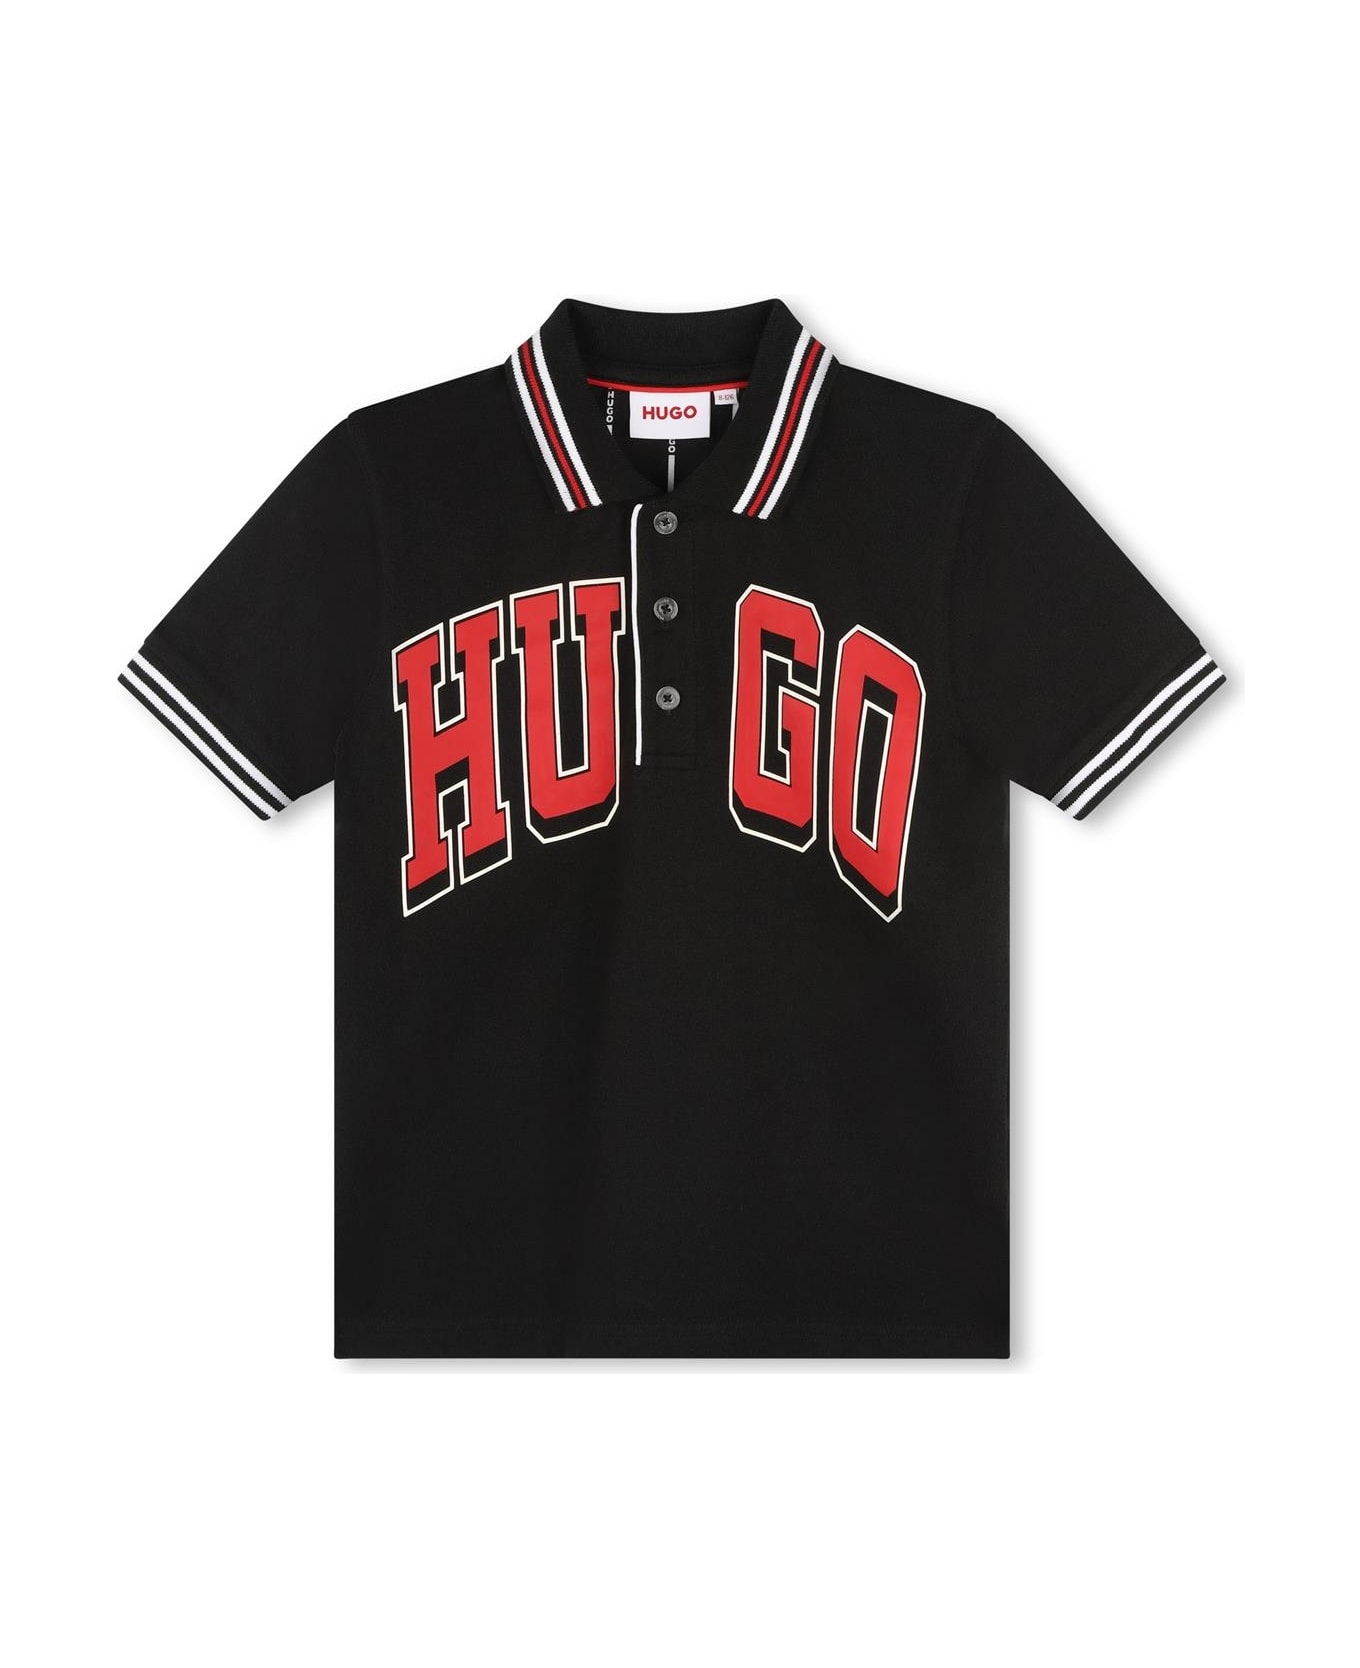 Hugo Boss Polo Shirt With Print - Black